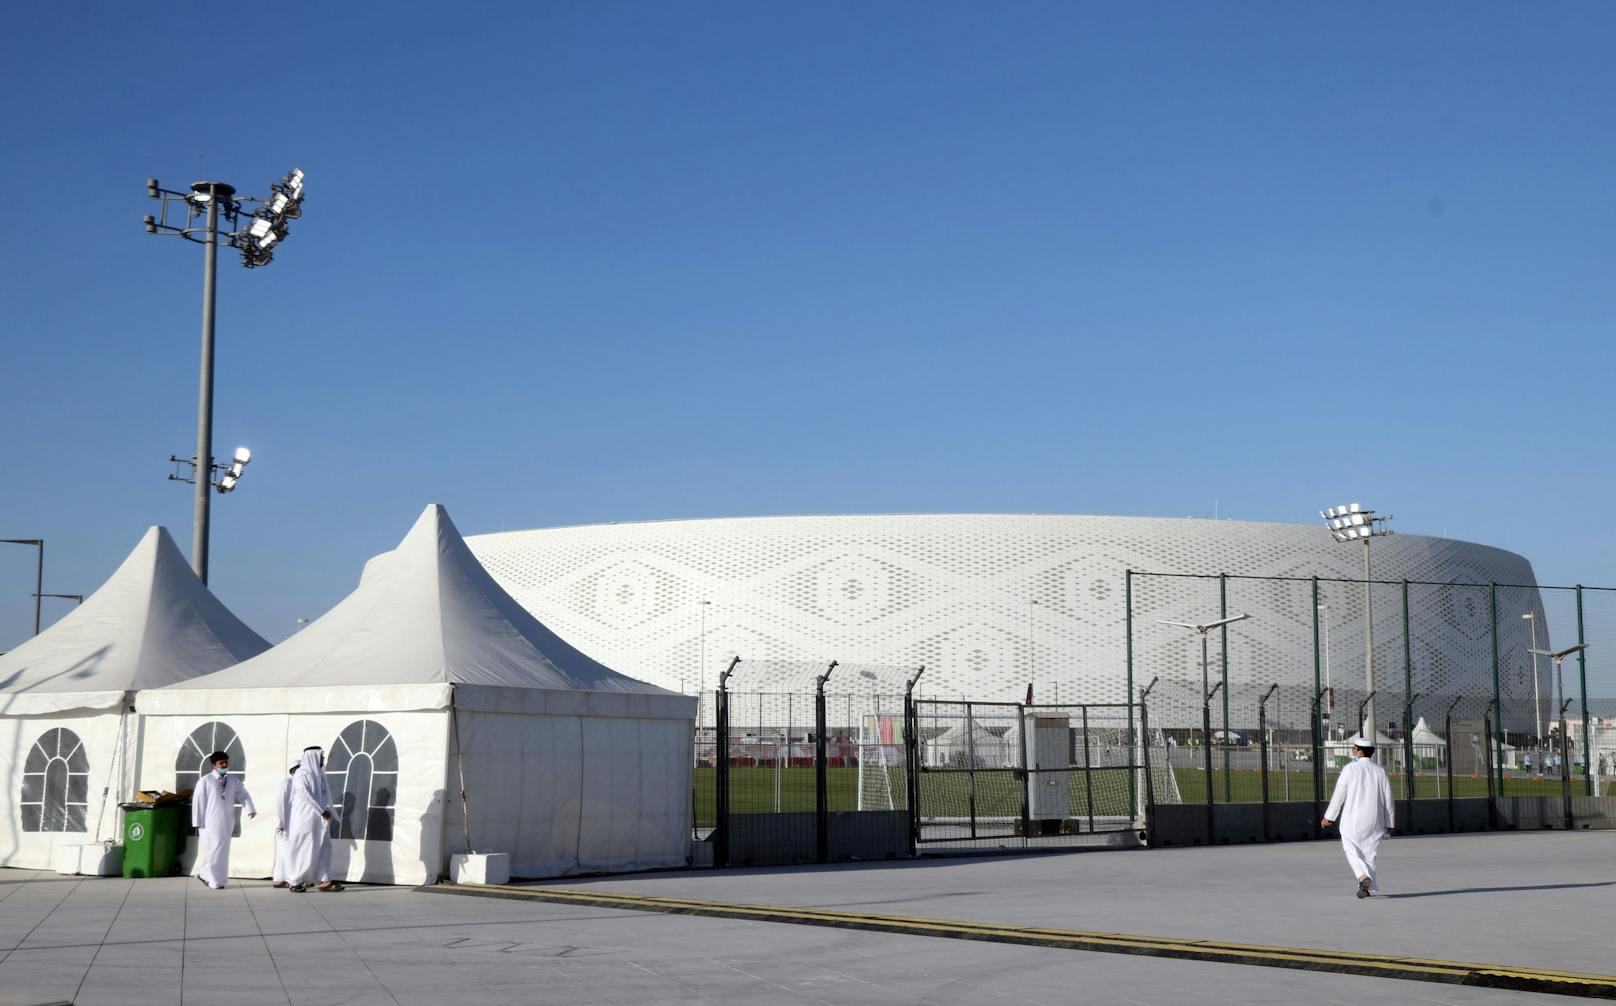 Bei der WM bietet das Al Thumama 40.000 Besuchern Platz, nach dem Event wird die Kapazität halbiert.